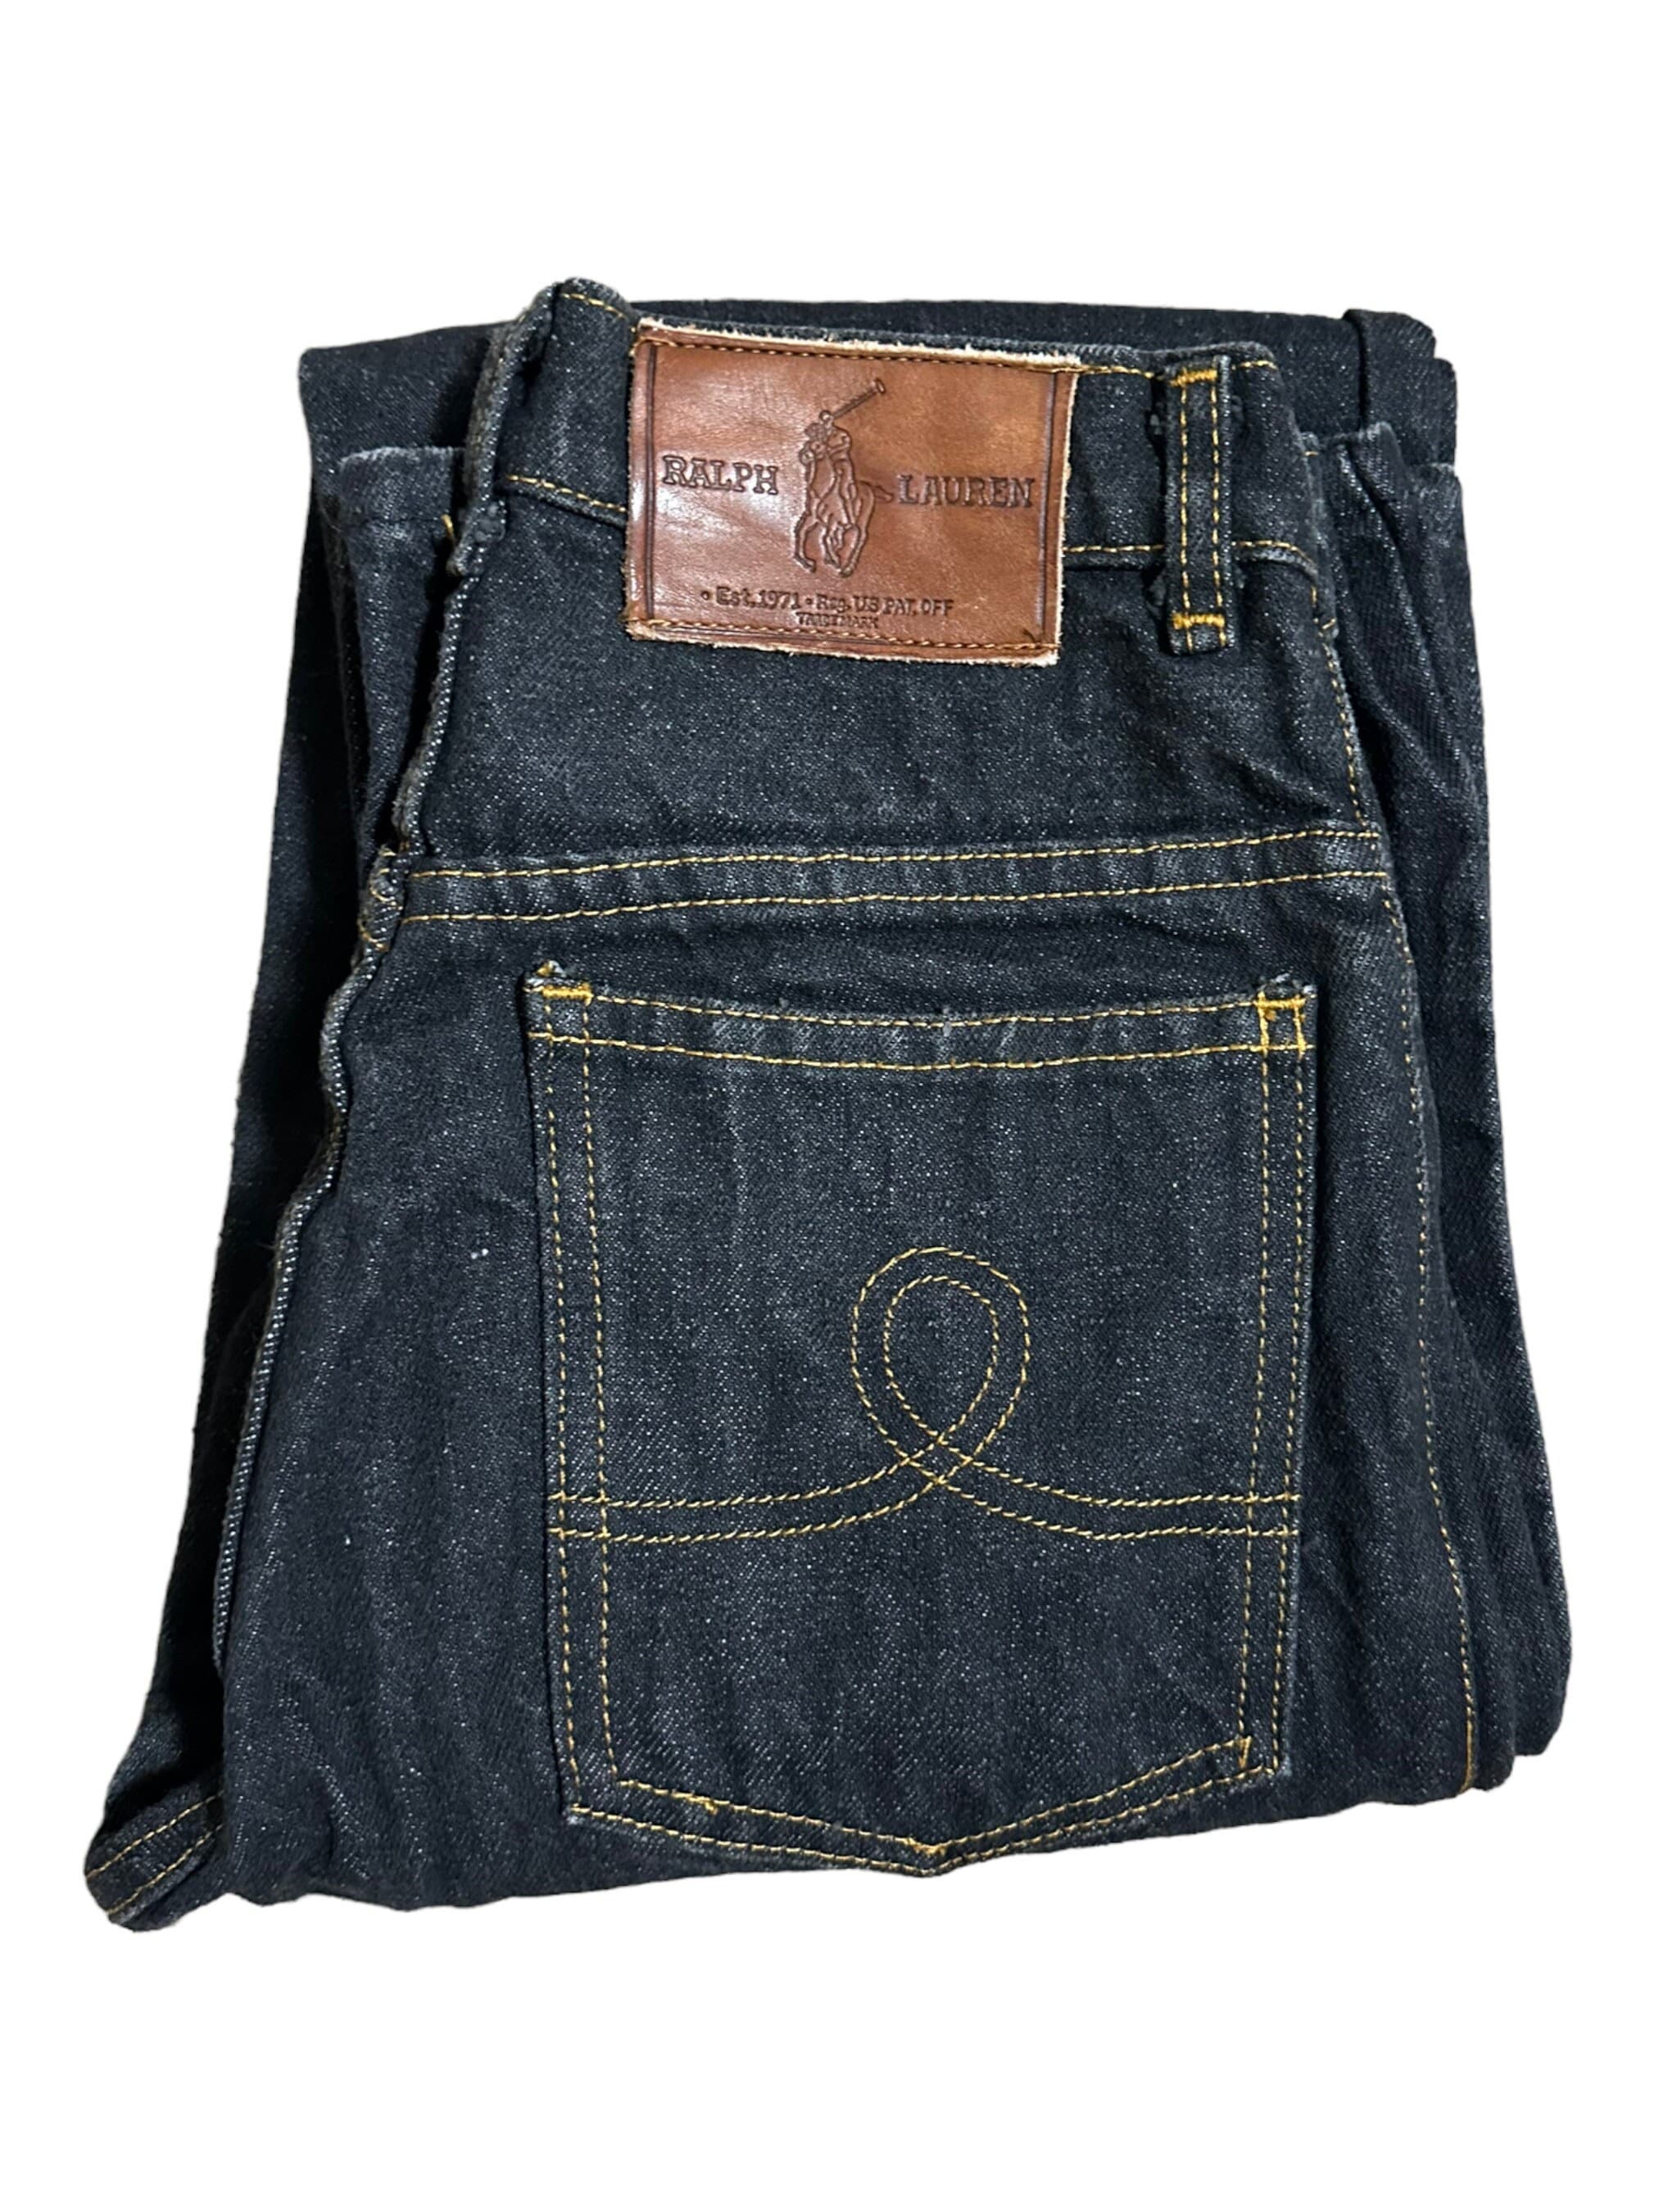 Ralph Lauren Jeans 